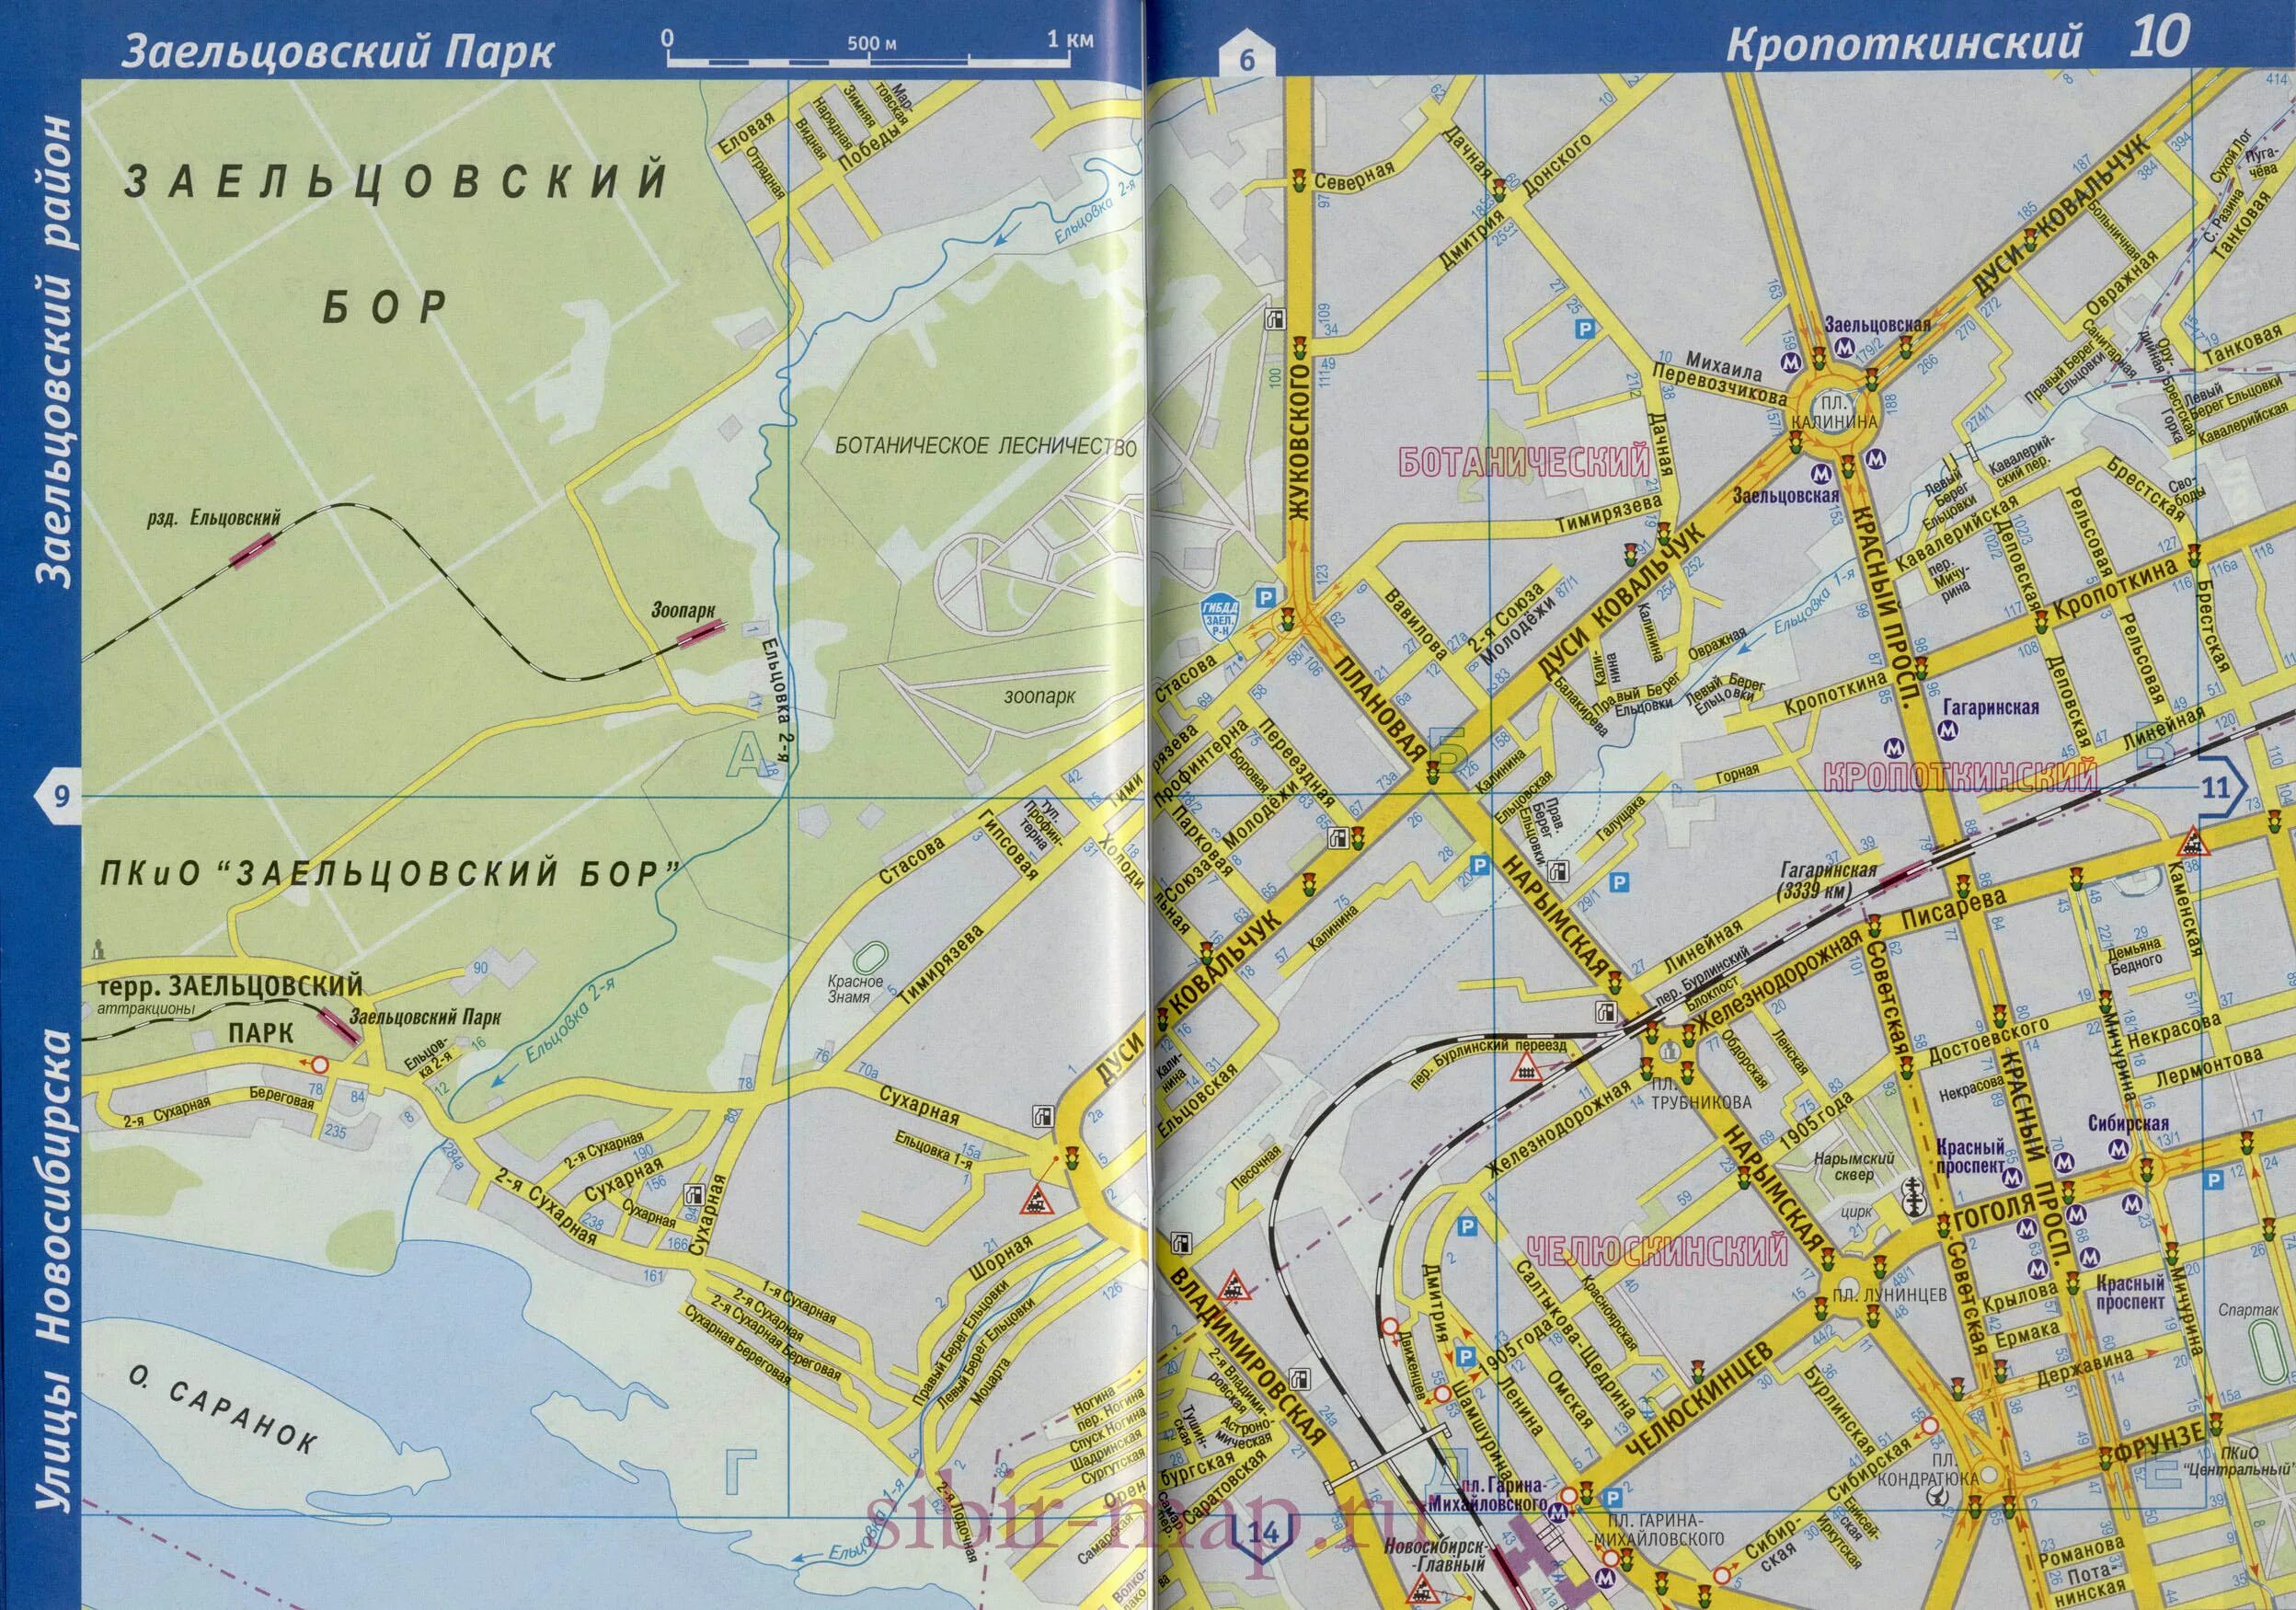 Заельцовский район Новосибирска на карте. Карта Новосибирска по районам города с улицами. Карта центрального района Новосибирска с улицами. Карта Заельцовского района г Новосибирска с улицами.